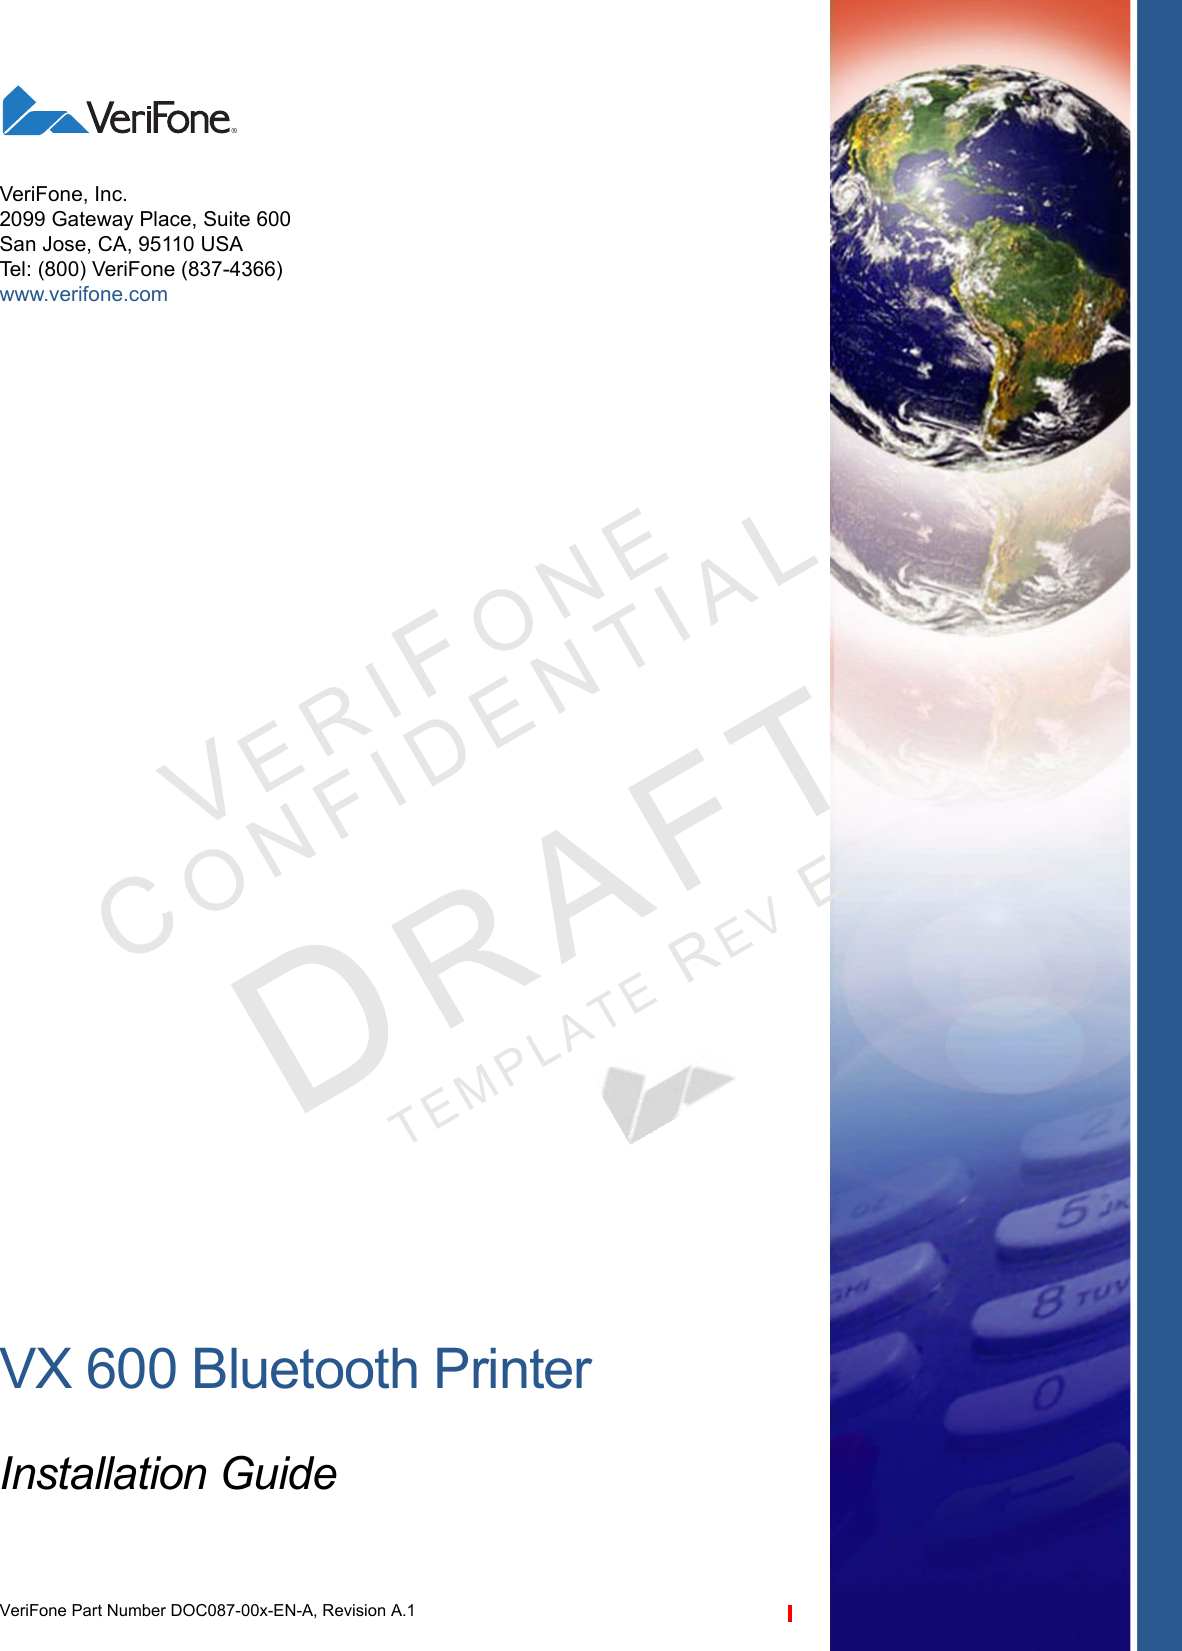 VX 600 Bluetooth PrinterInstallation GuideVeriFone Part Number DOC087-00x-EN-A, Revision A.1VeriFone, Inc.2099 Gateway Place, Suite 600San Jose, CA, 95110 USATel: (800) VeriFone (837-4366)www.verifone.comVERIFONECONFID E N T IALTEMPLATE REV E 